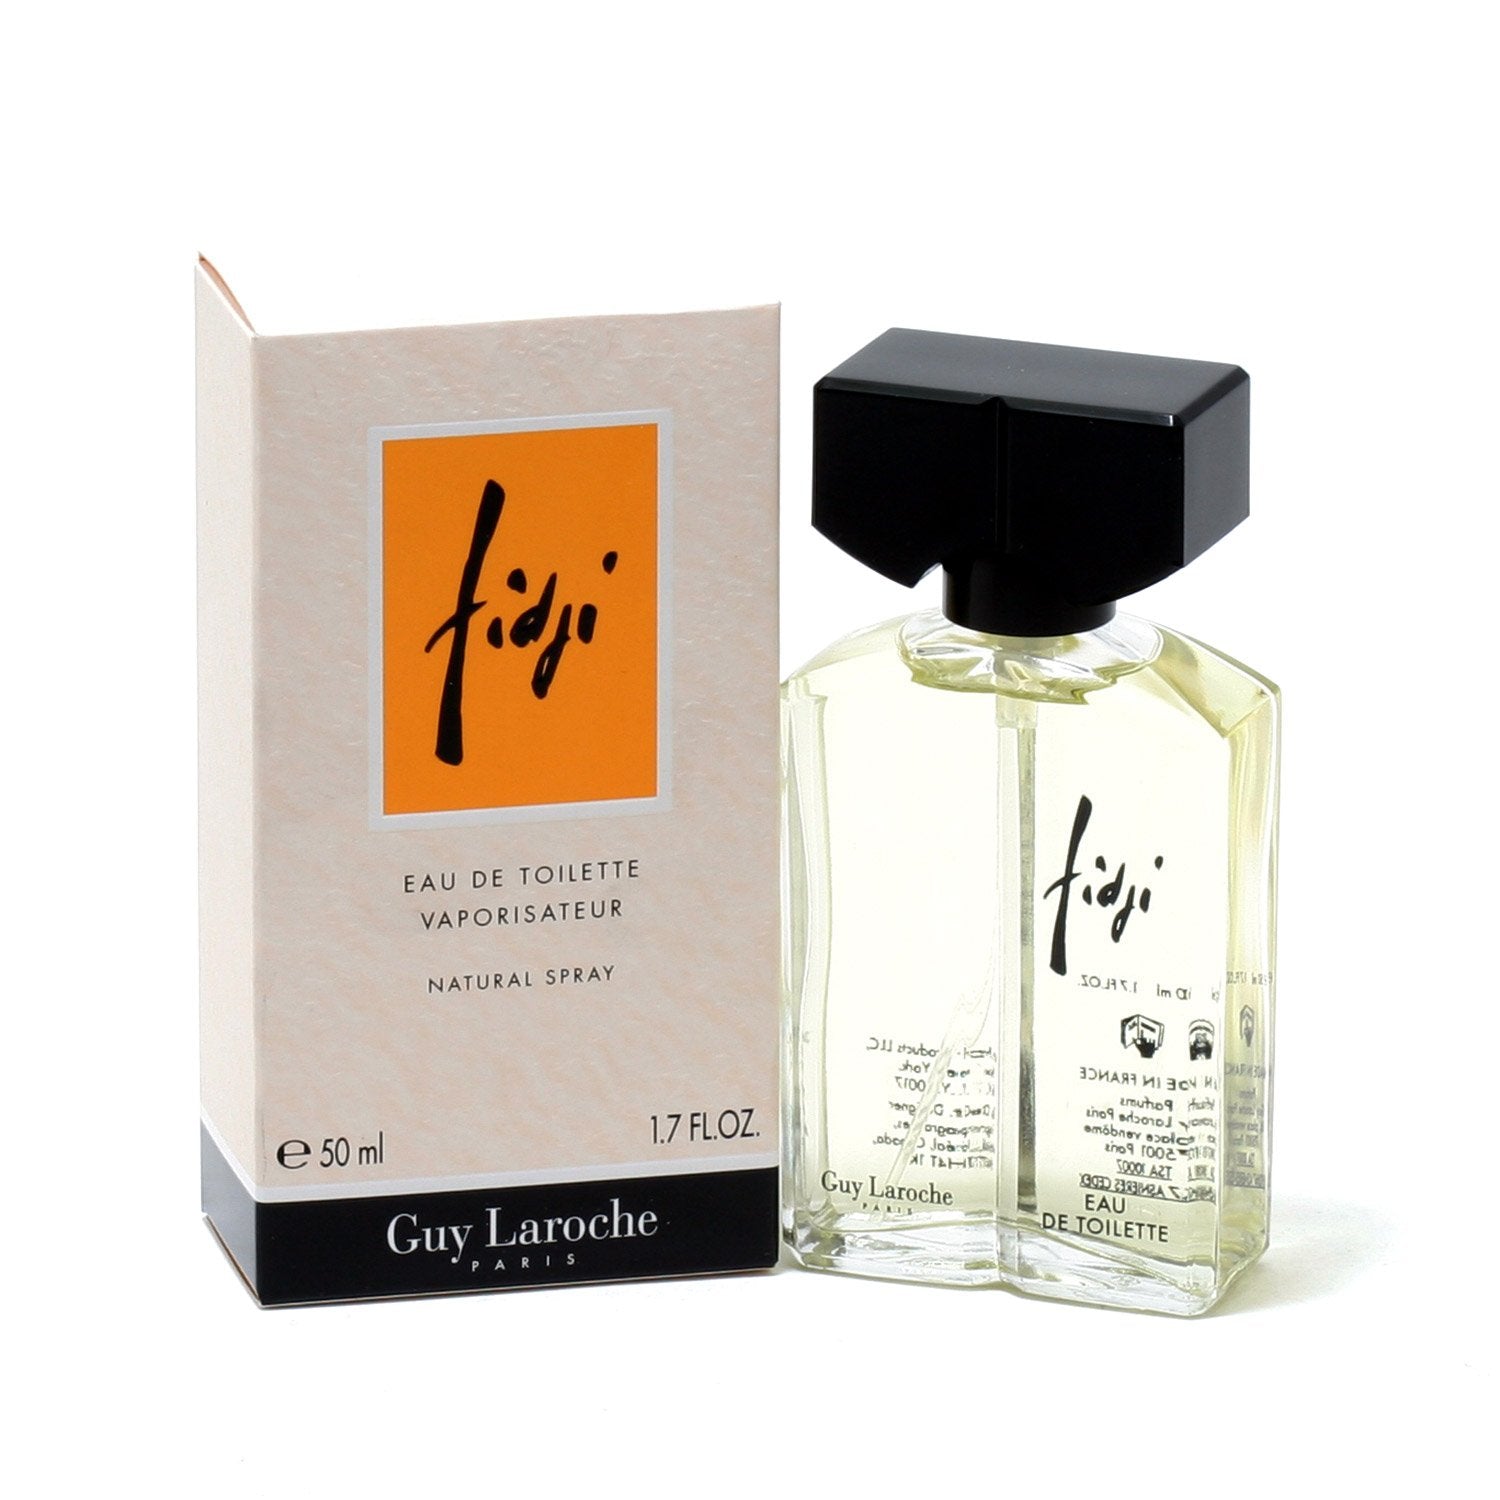 Perfume - FIDJI FOR WOMEN BY GUY LAROCHE - EAU DE TOILETTE SPRAY